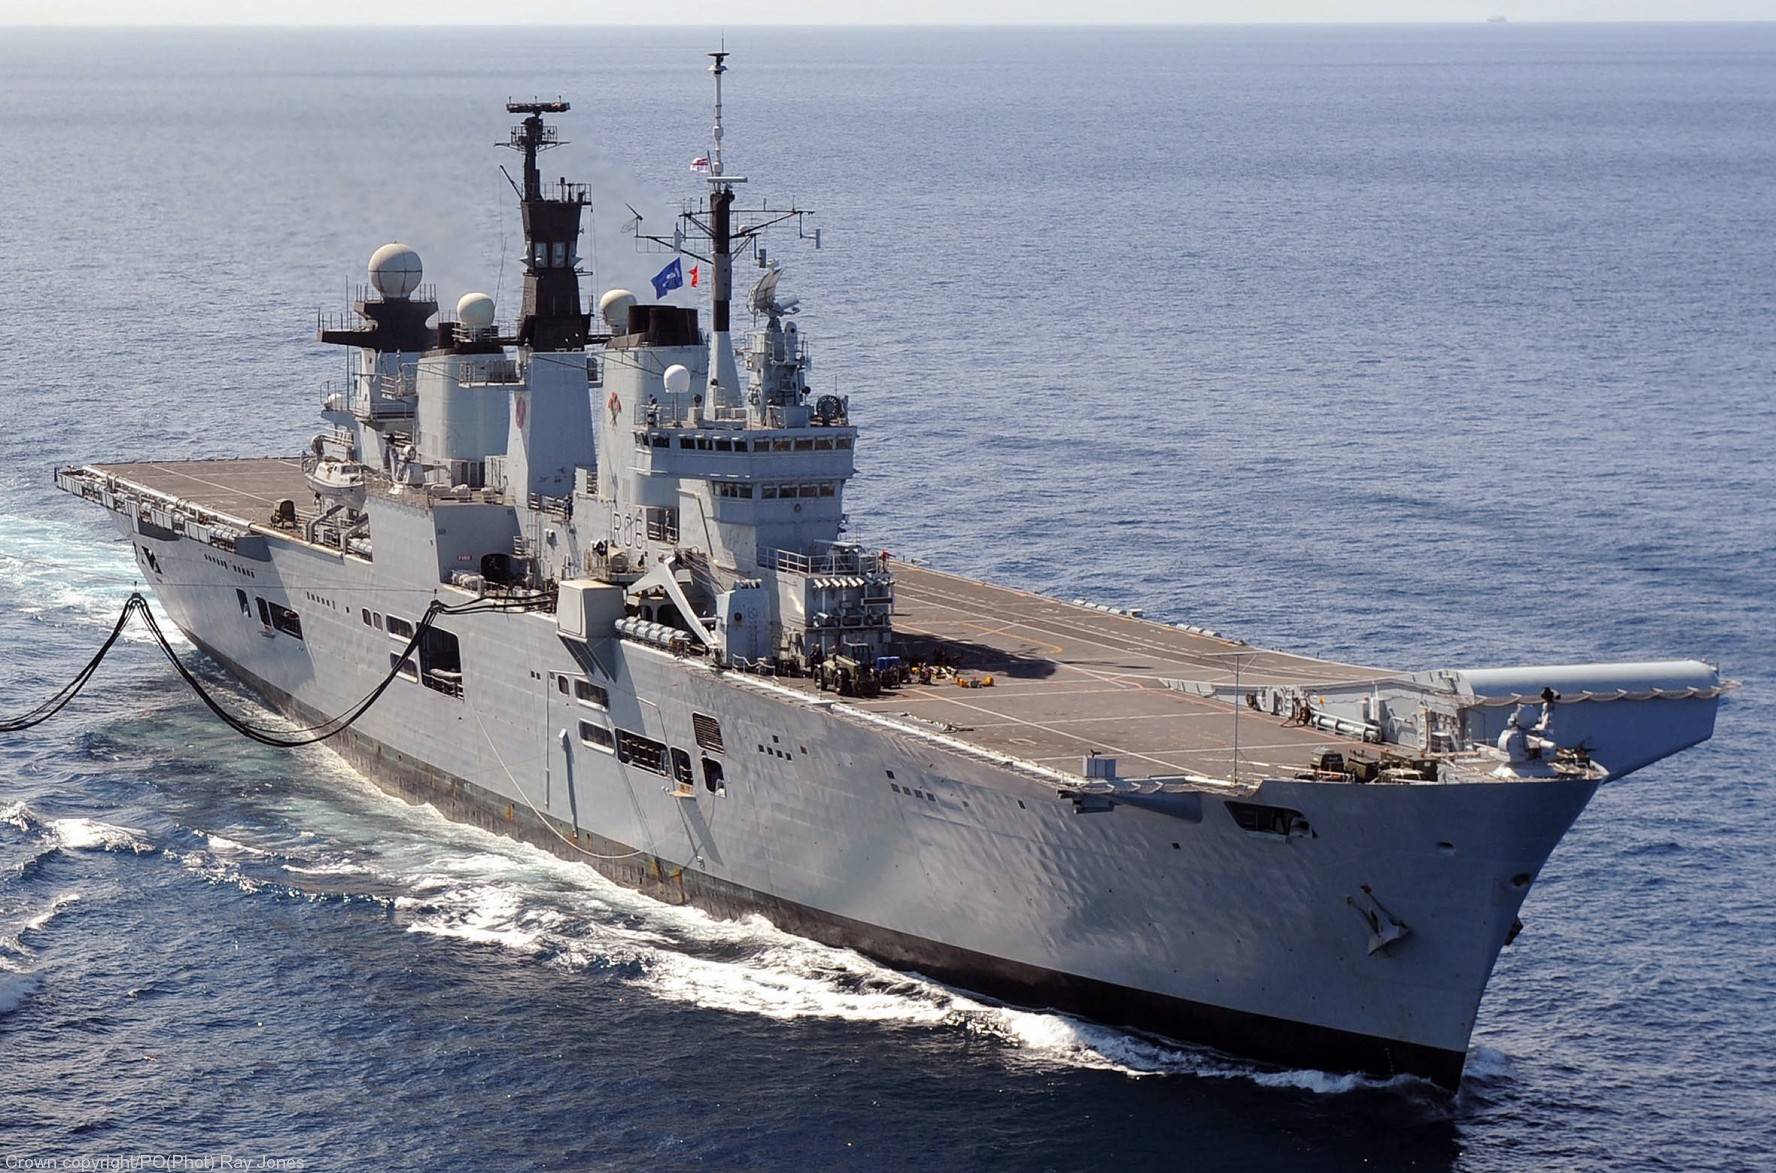 原创英国军无敌级航母,马岛海战显威风,历史贡献不可磨灭!